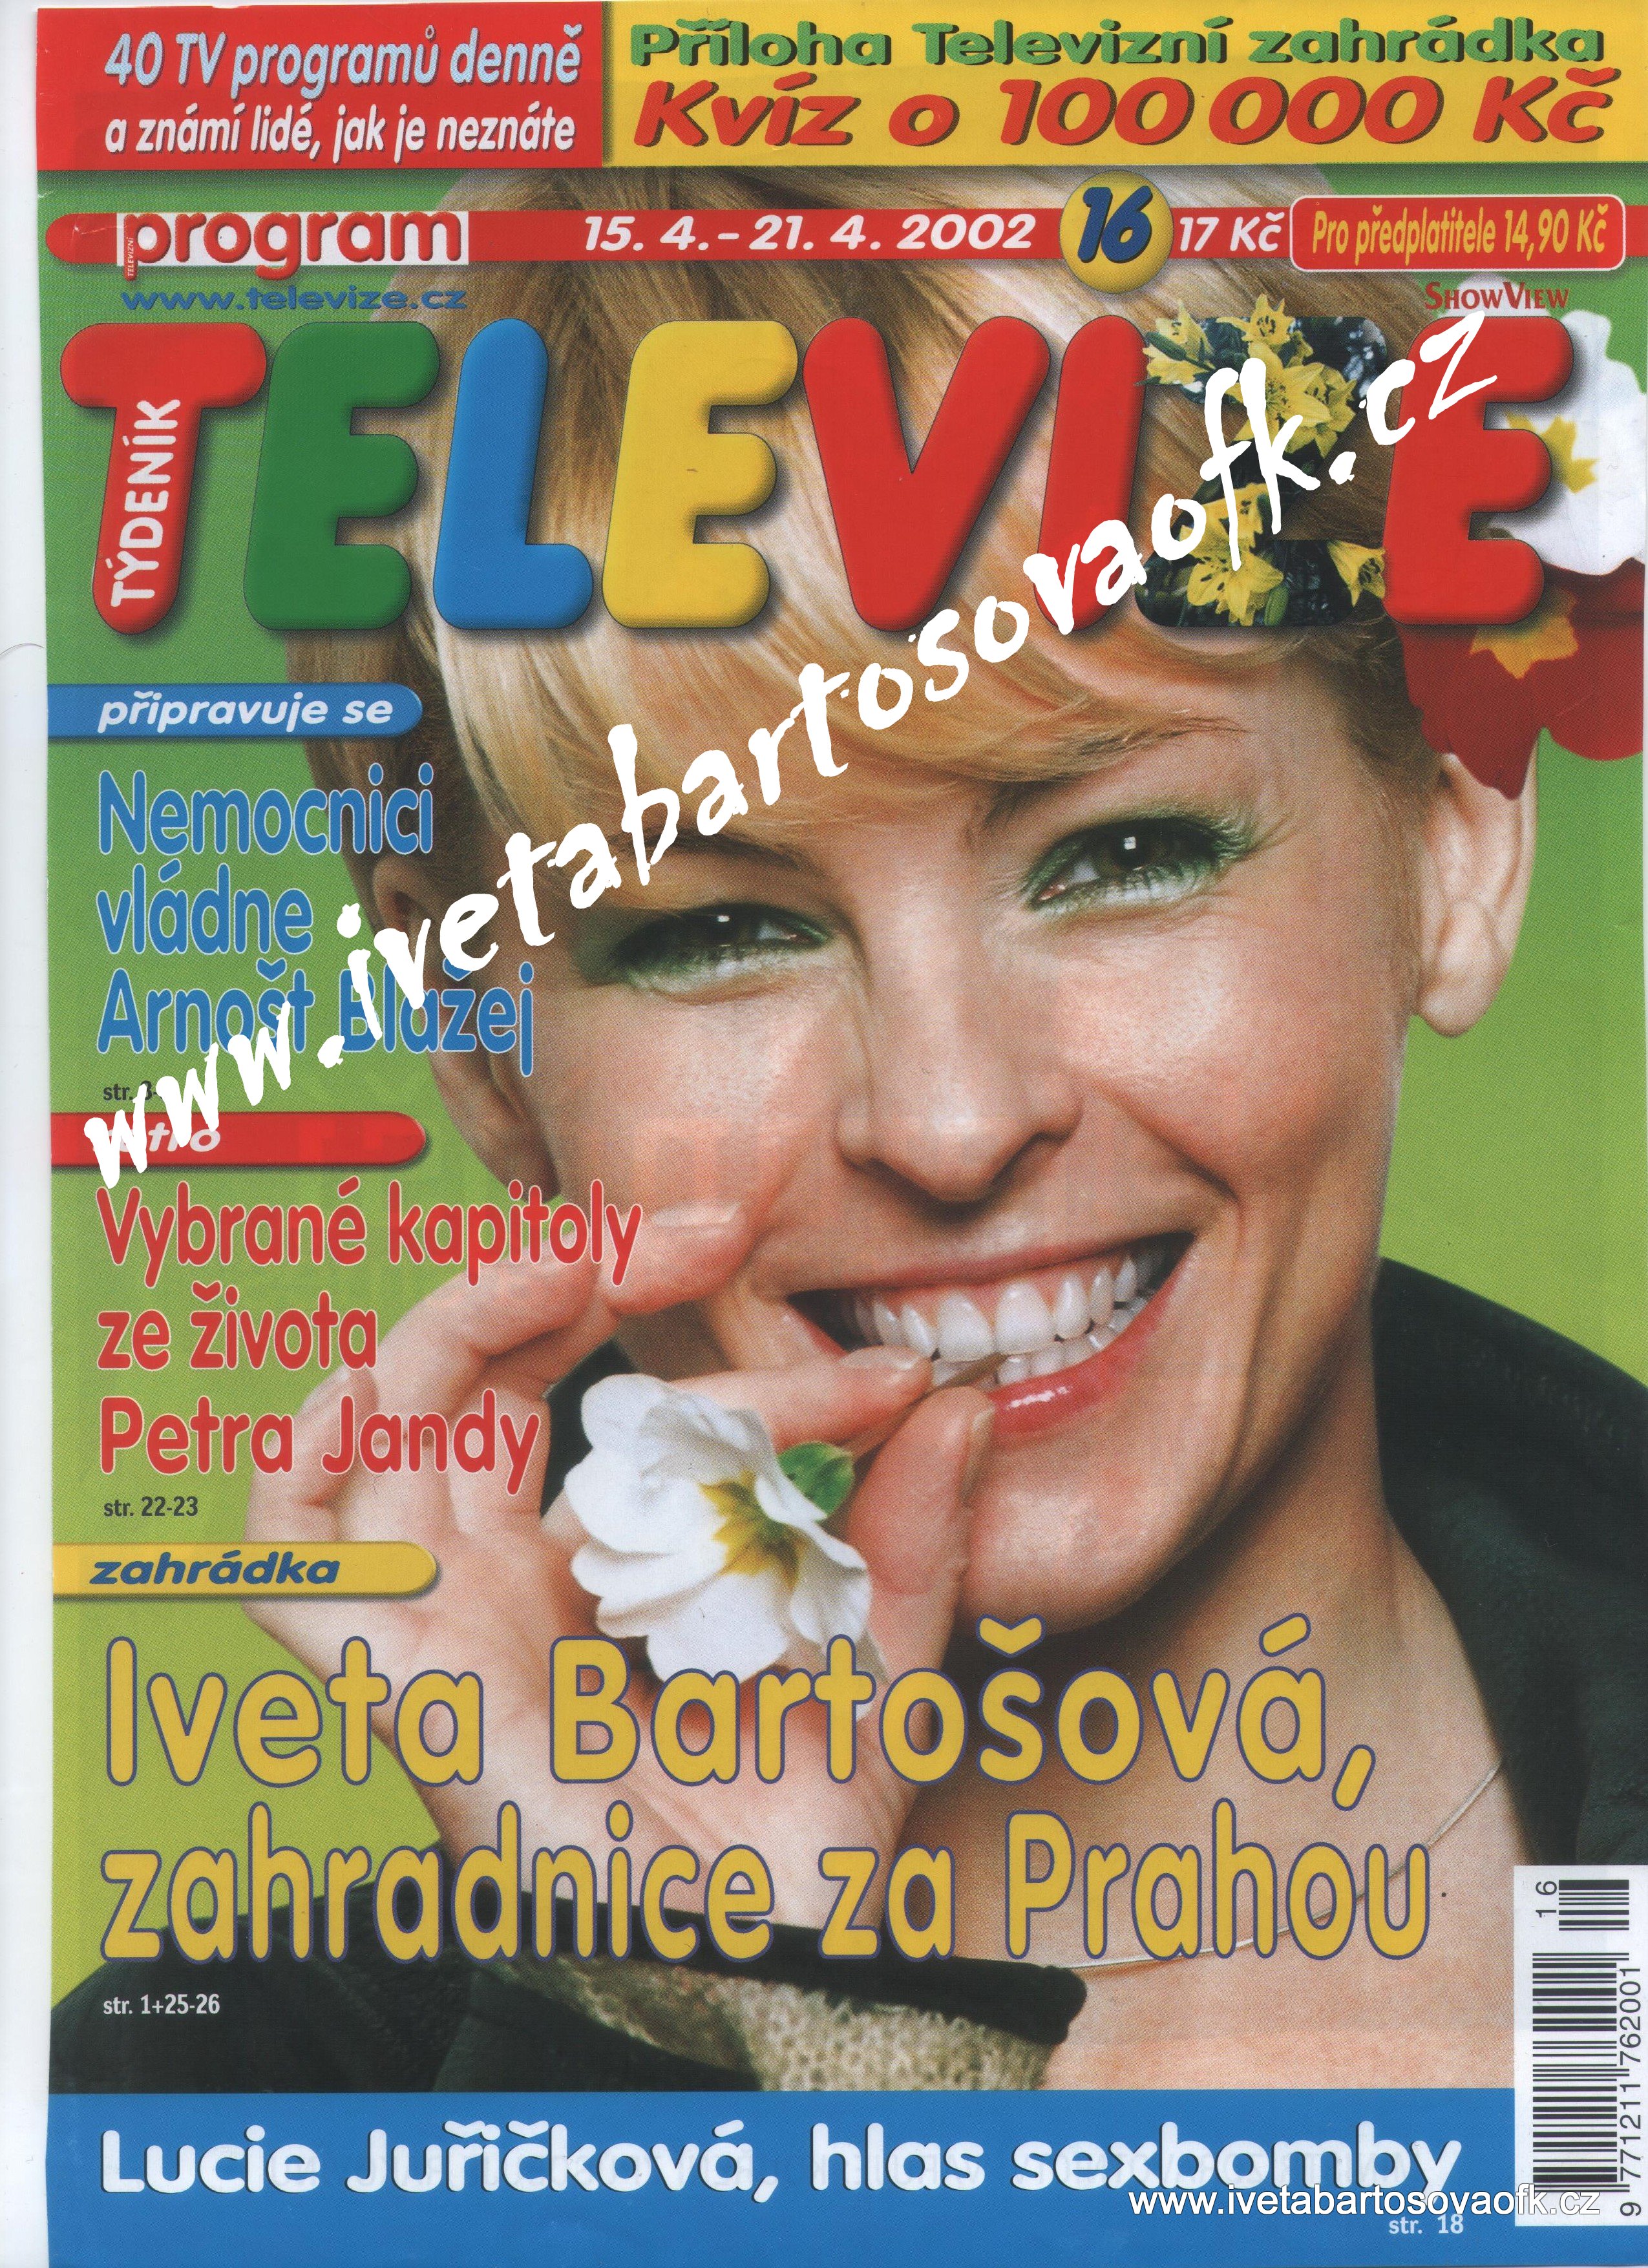 Týdeník Televize duben/ 2002  (1)